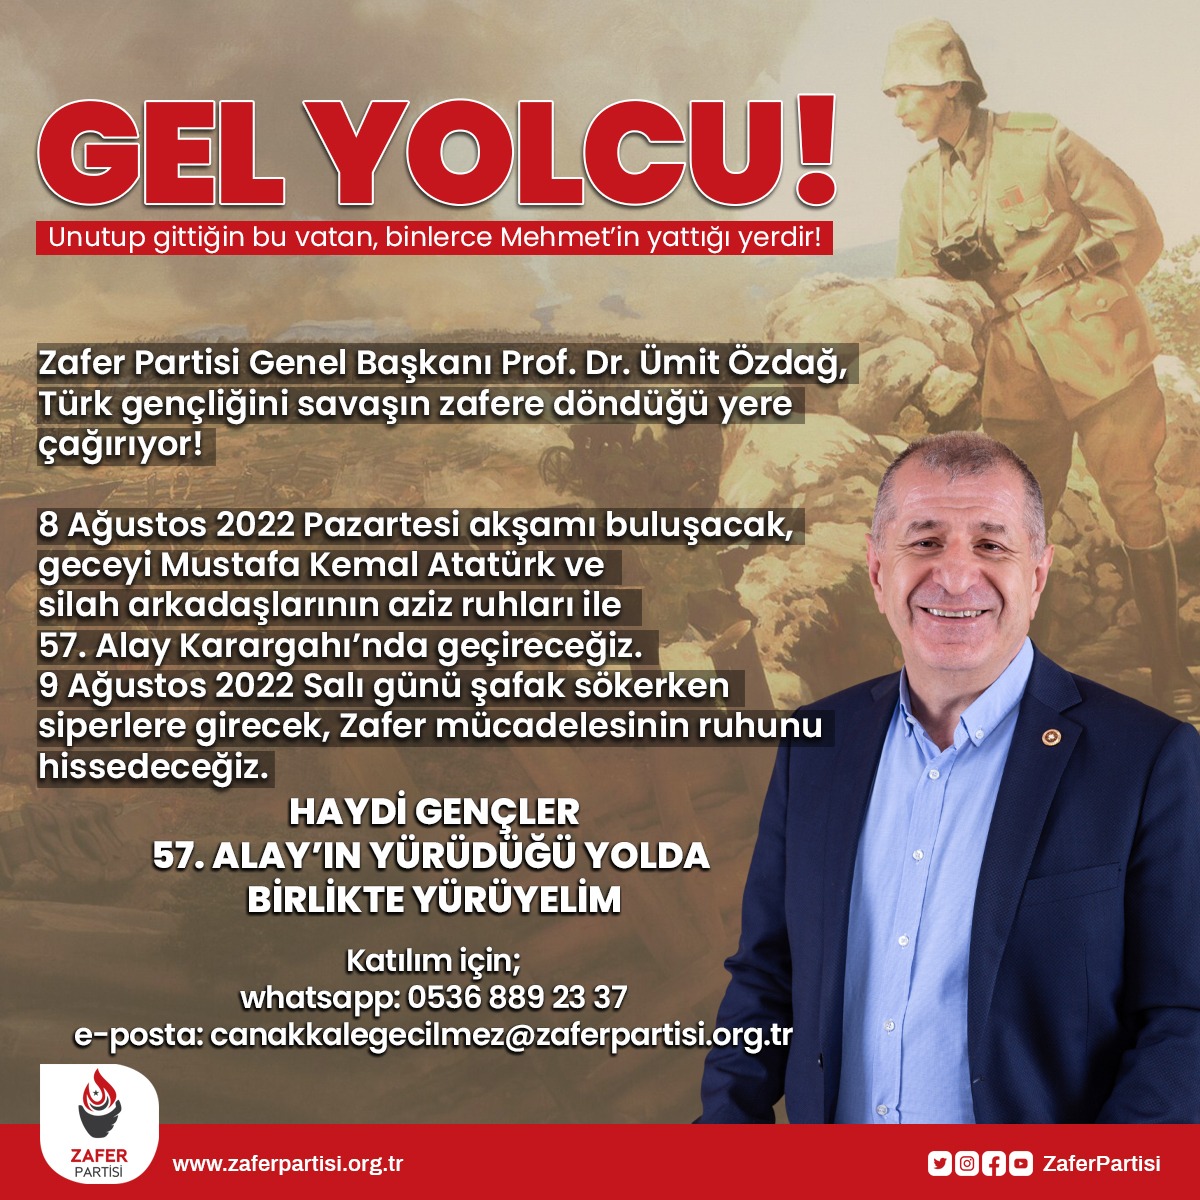 Kıymetli Türk Gençleri,
Mustafa Kemal Atatürk'ün ve Çanakkale'de destan yazan kahraman askerlerimizin vatan sevgisine, zafere olan inancına ve dünyayı dize getiren mücadele azmine tanık olmanız için sizi Çanakkale'ye bekliyorum.
8 Ağustos'ta 57. Alay Karargahı'nda görüşmek üzere!